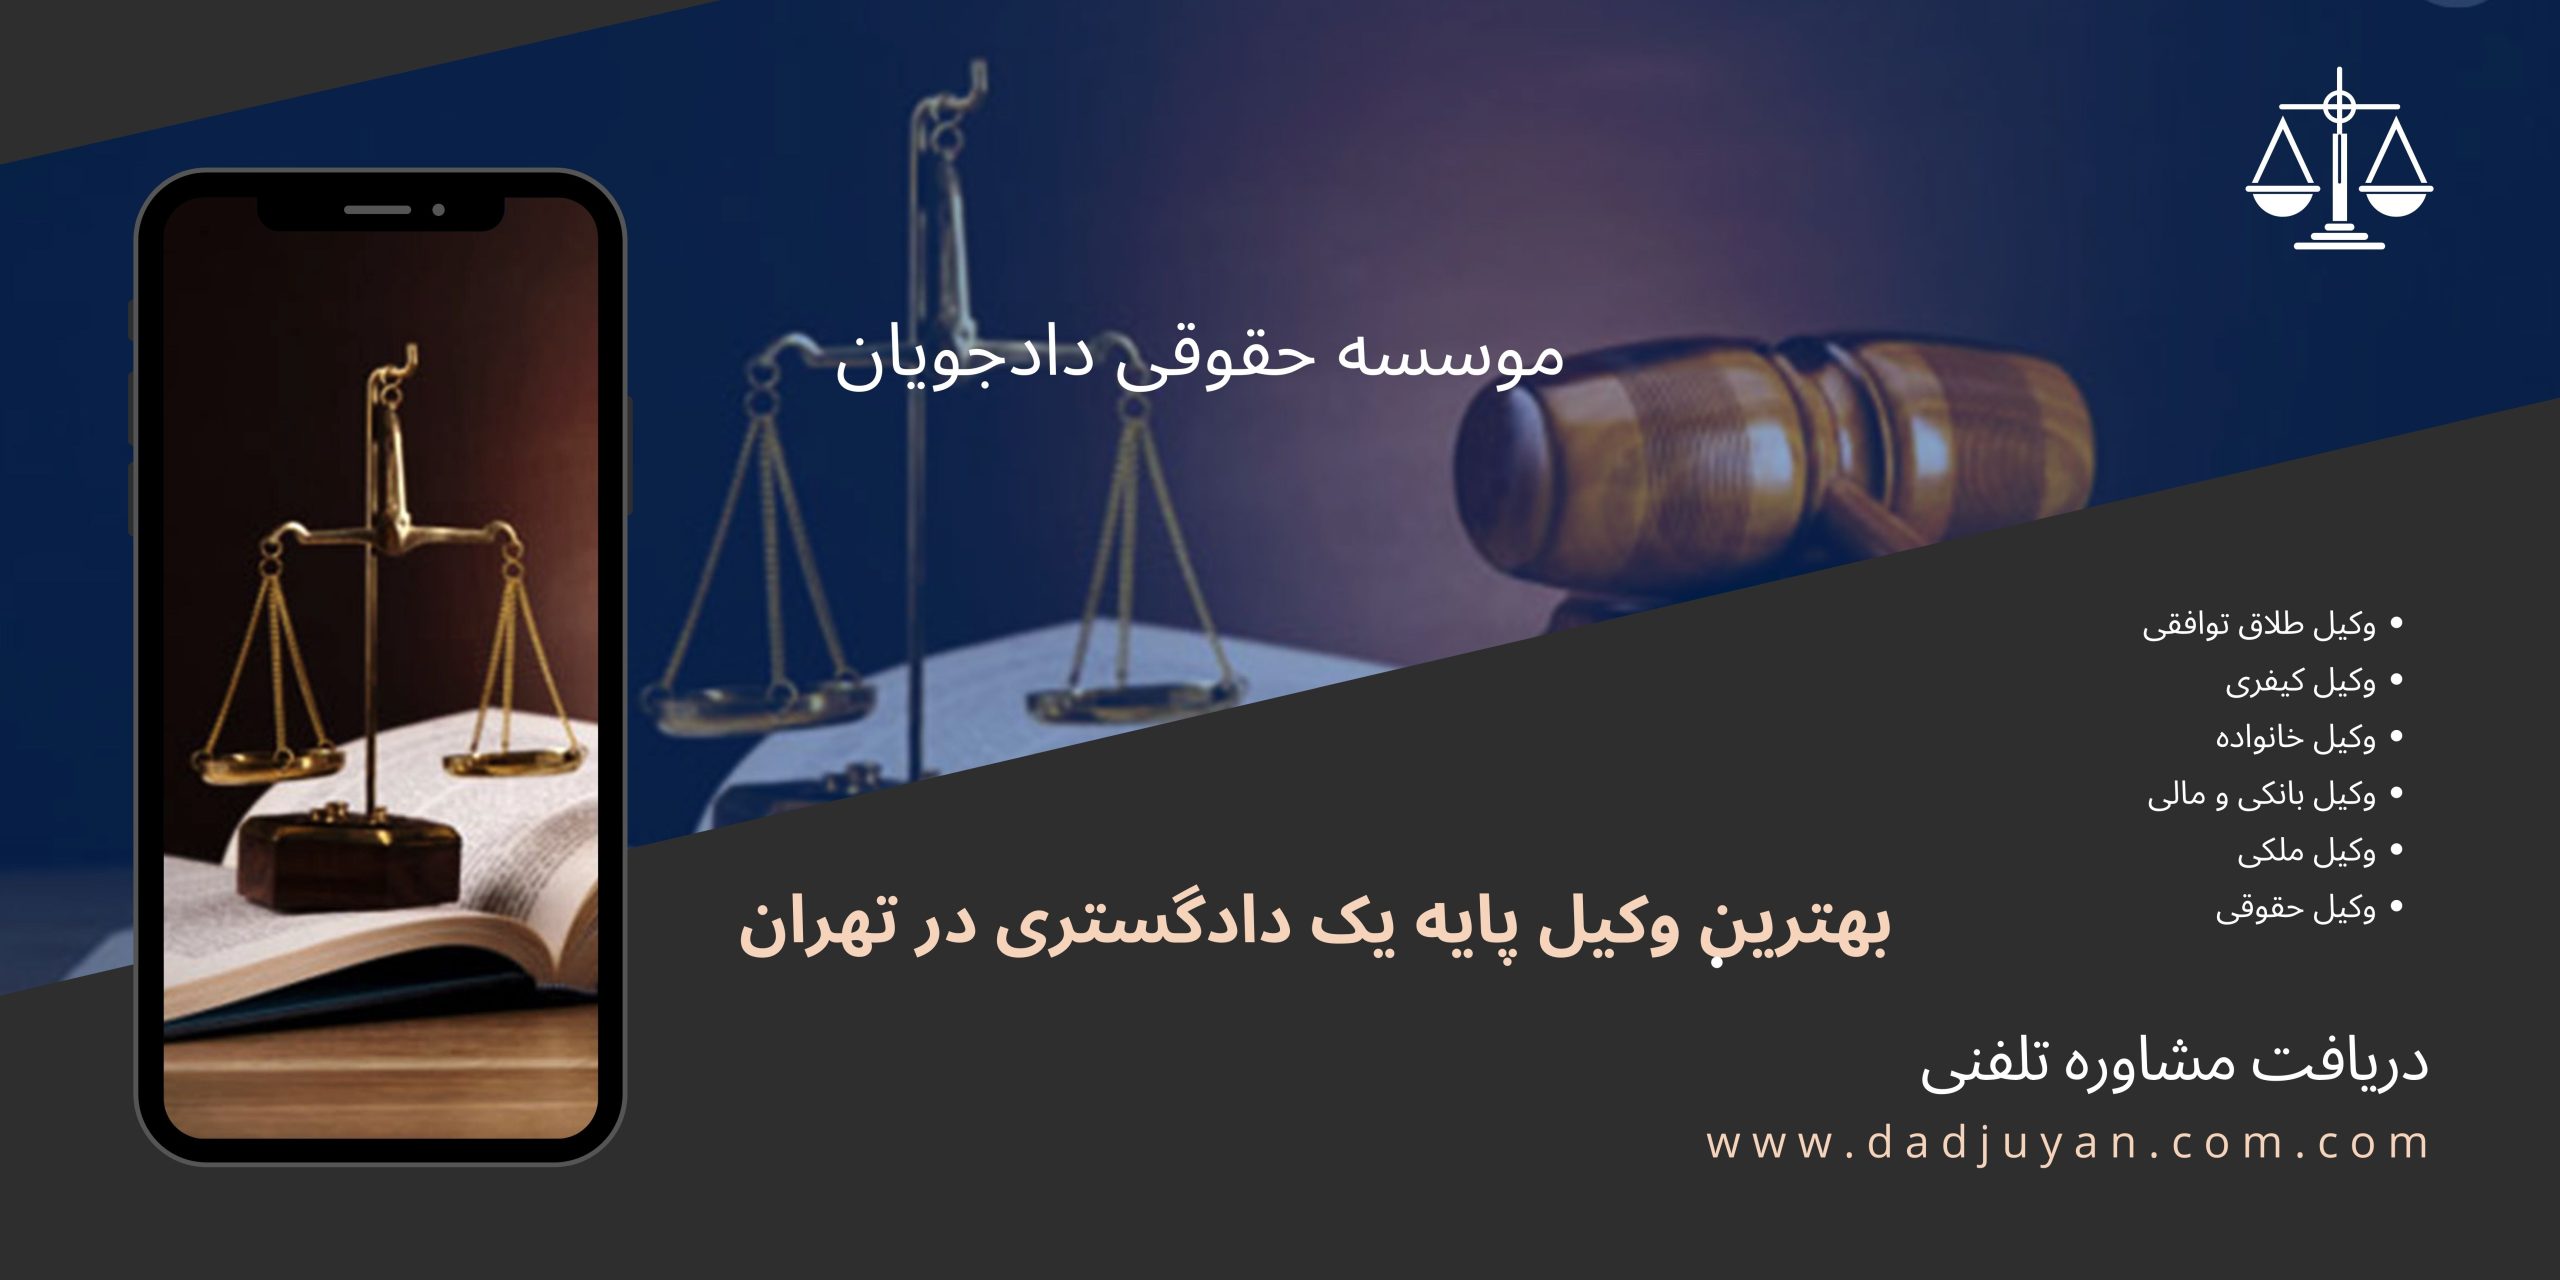 بهترین وکیل پایه یک دادگستری در تهران